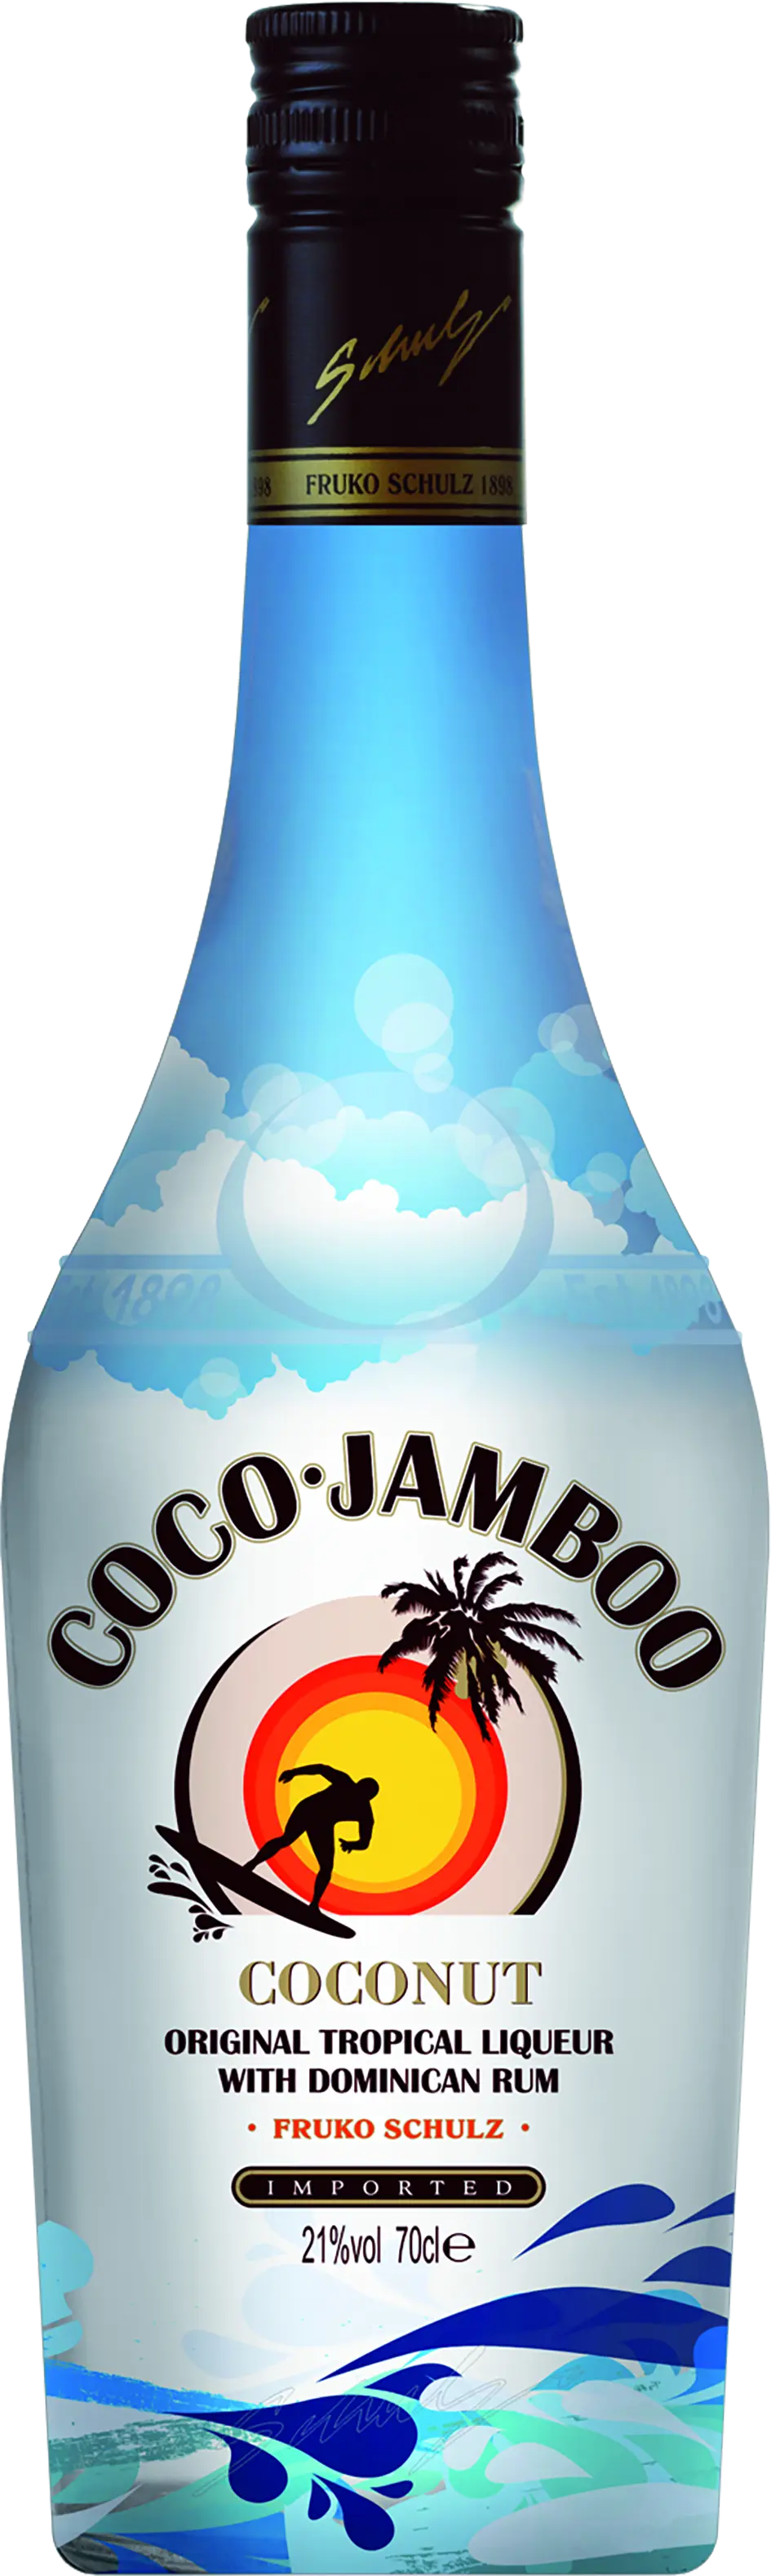 Coco Jamboo Coconut  (Коко Джамбо Кокосовый)